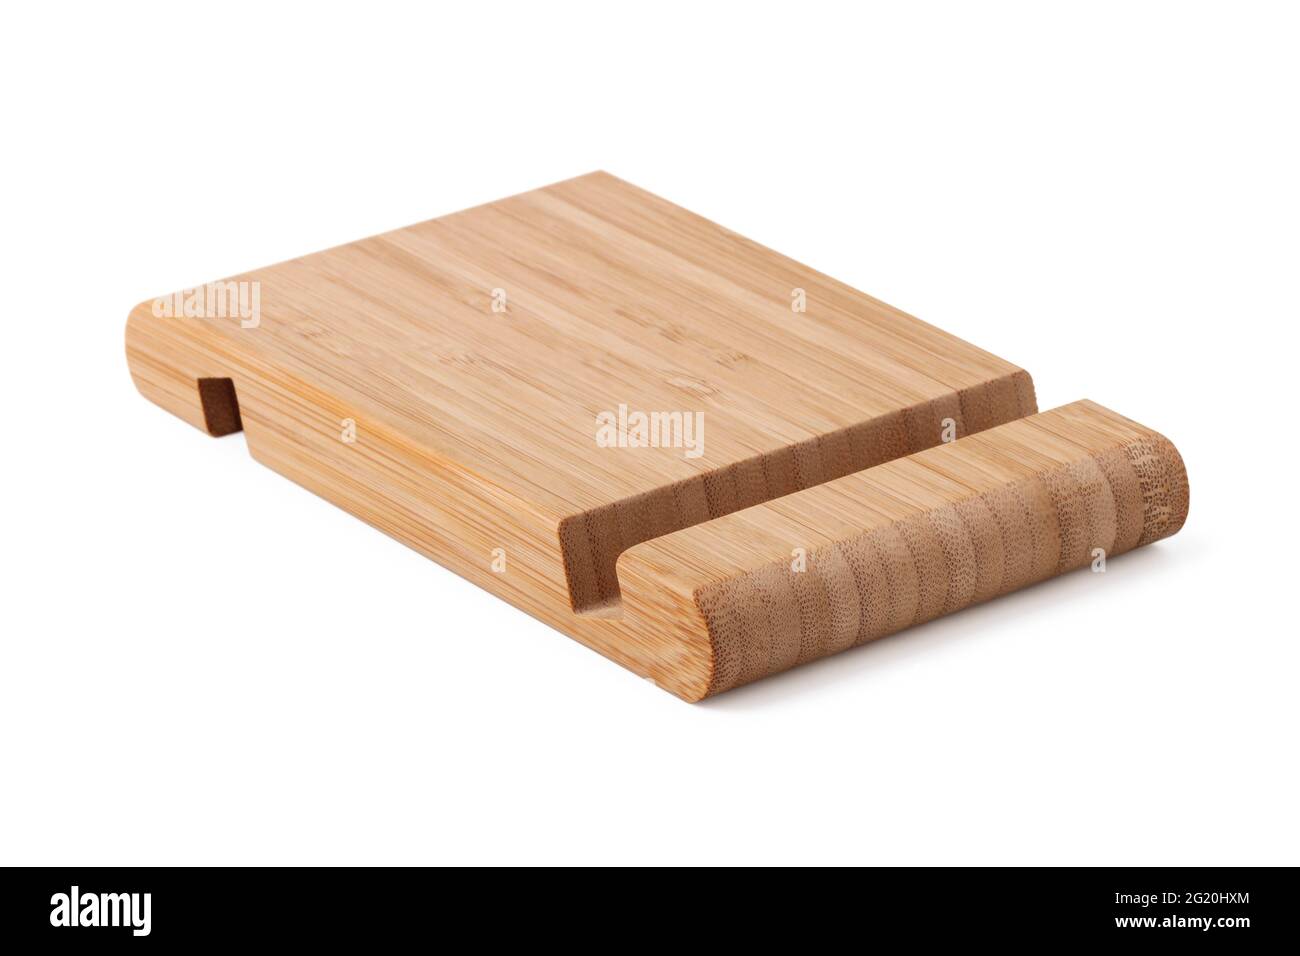 Portacellulare legno Immagini senza sfondo e Foto Stock ritagliate - Alamy